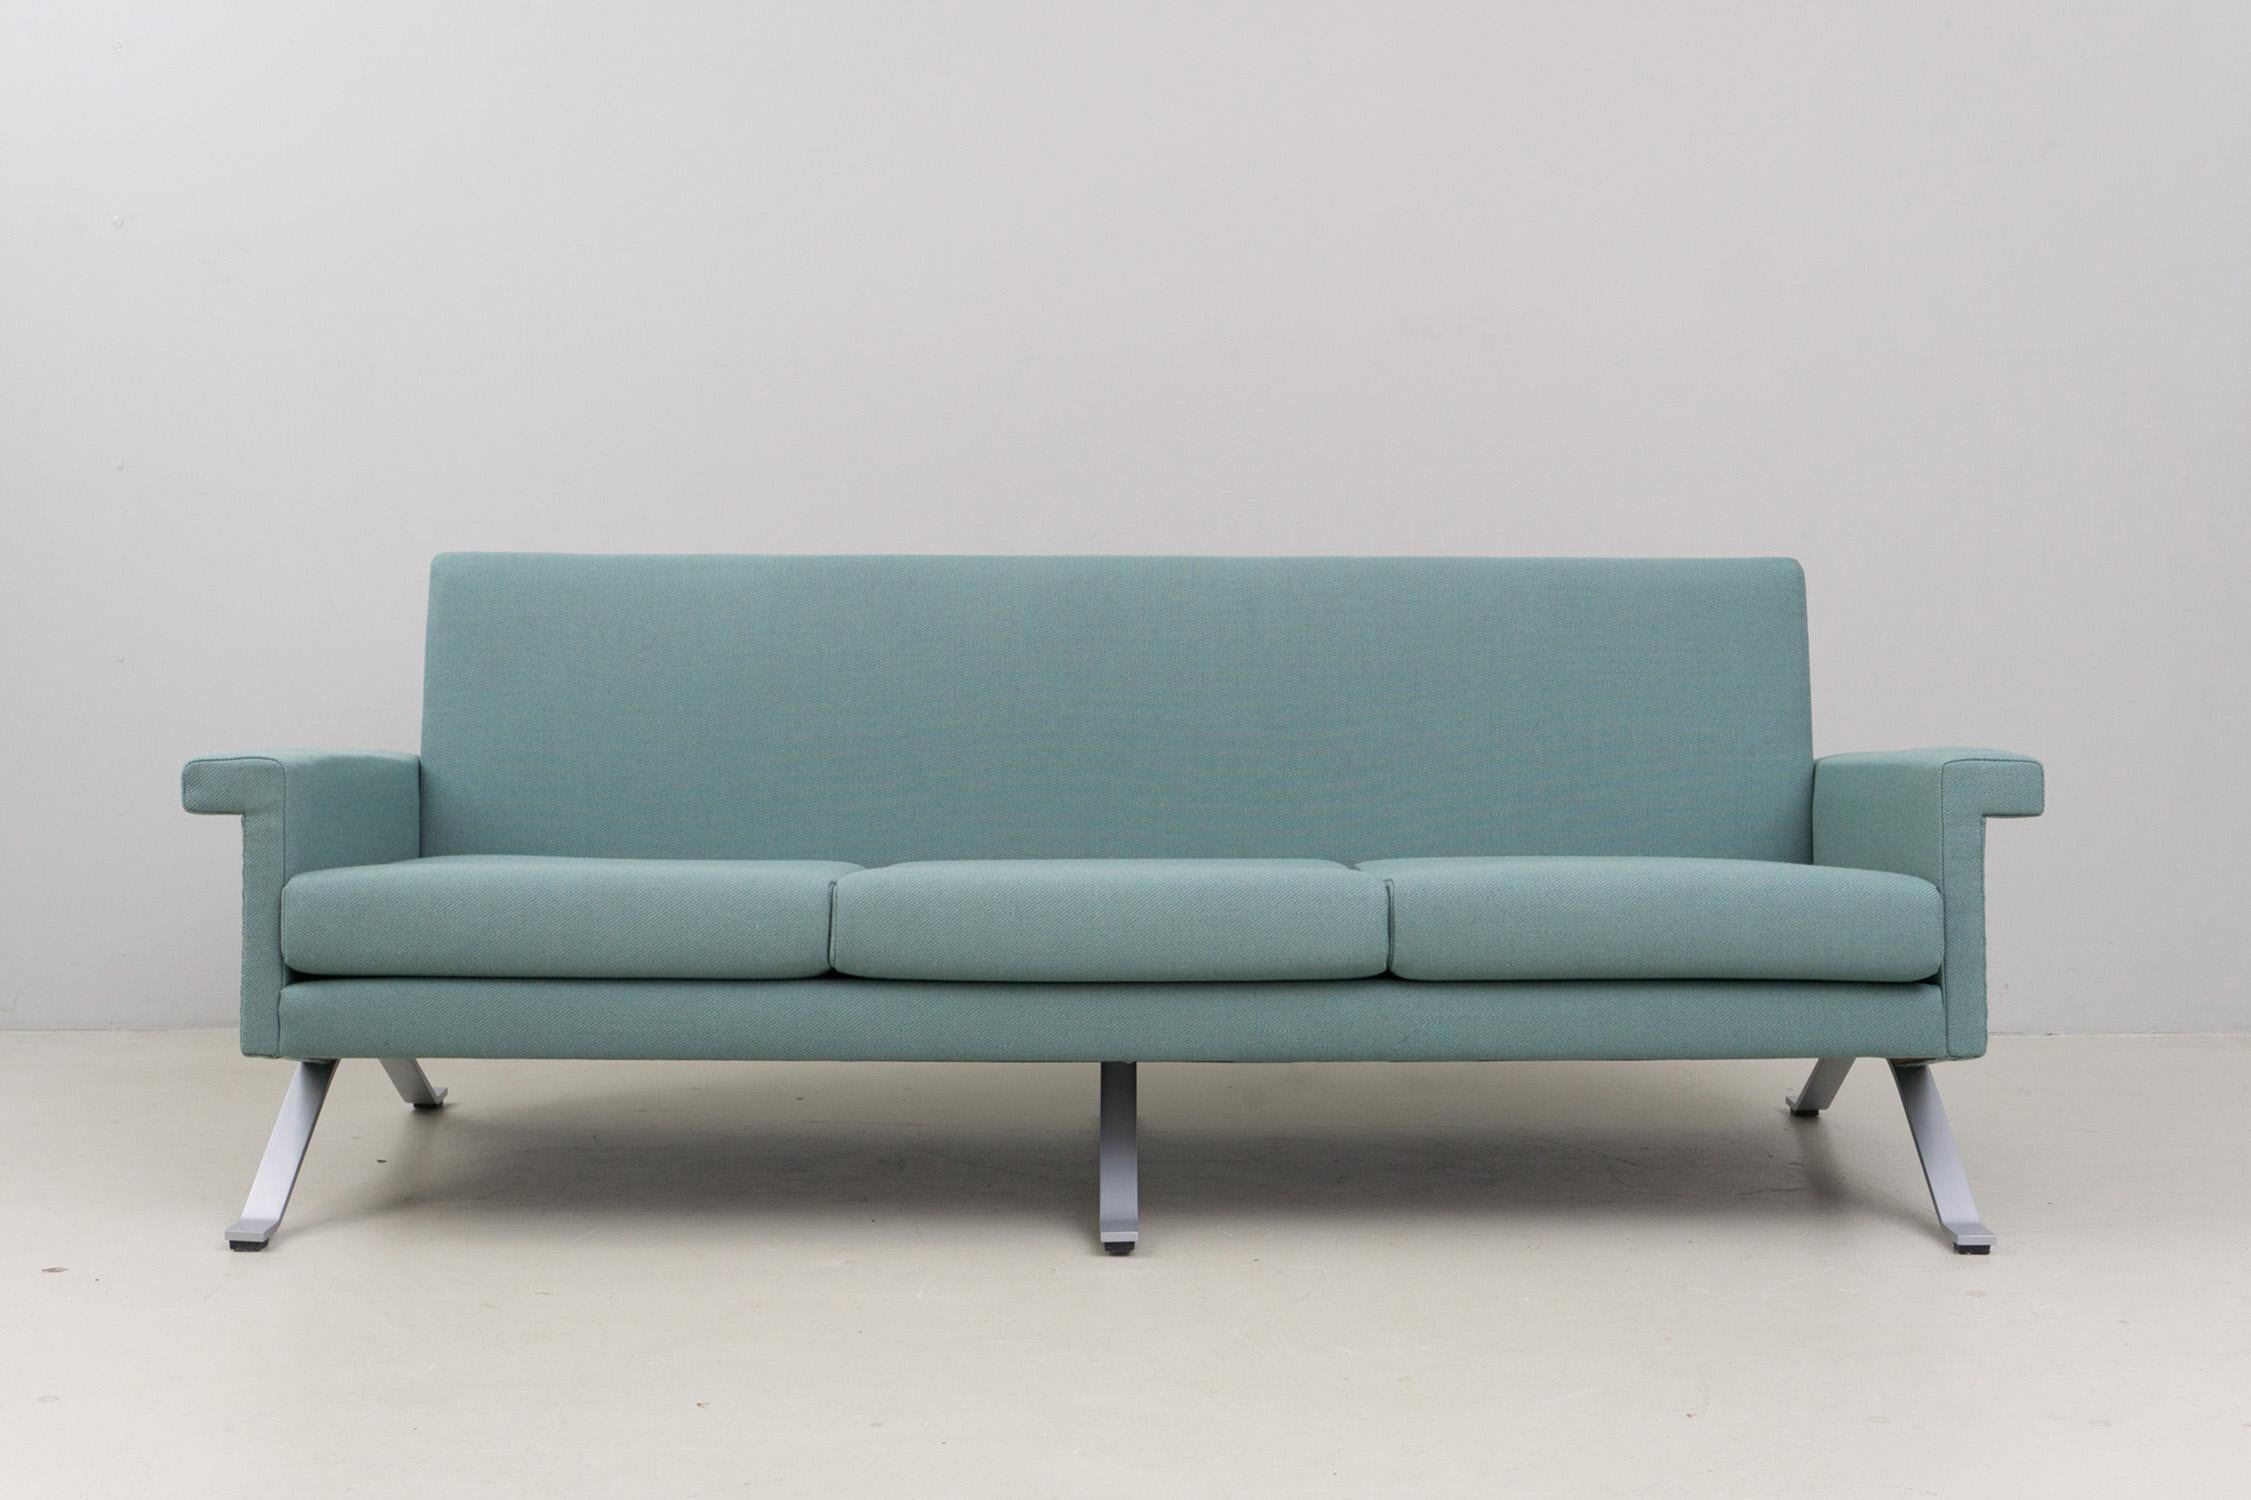 Ce canapé trois places minimaliste et élégant est doté d'une structure en métal chromé mat et d'une nouvelle sellerie et d'un nouveau revêtement. La housse est en 100% laine dans un vert grisâtre froid. Excellent état. 
La dernière production de